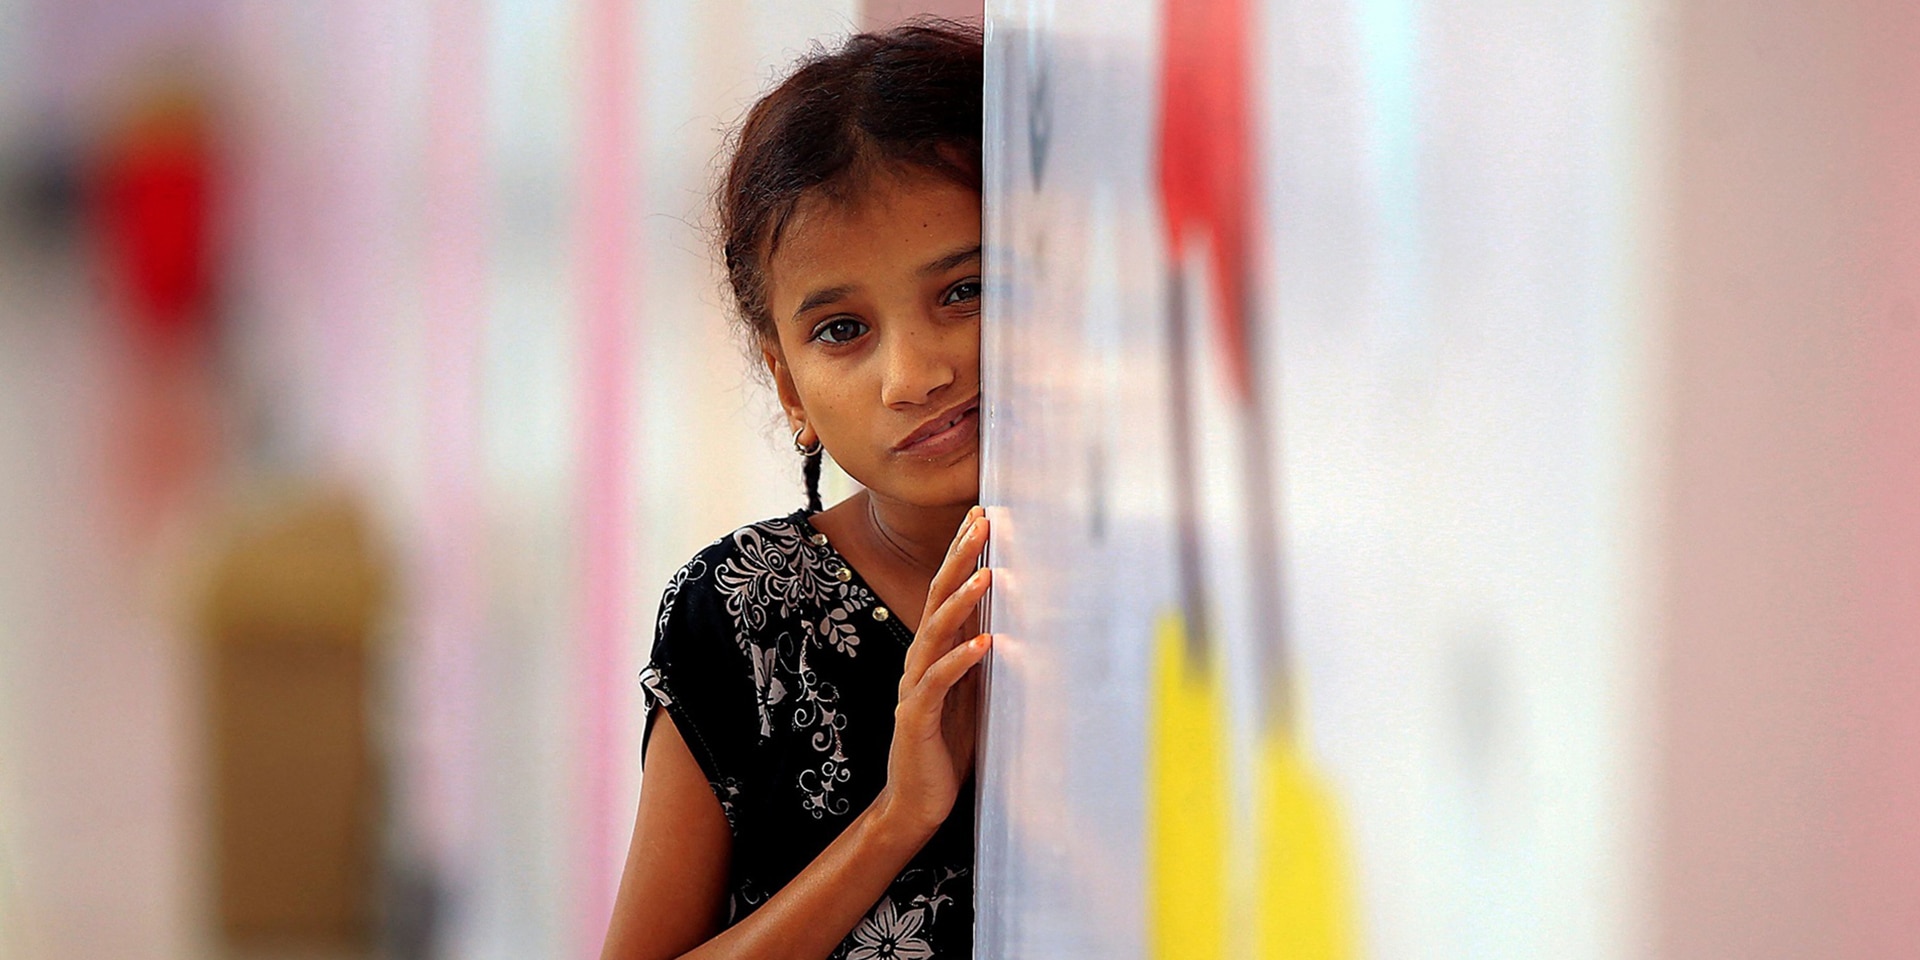 Ein kleines Mädchen lehnt mit besorgtem Gesichtsausdruck an einer Wand und wartet darauf, Essen zu bekommen.